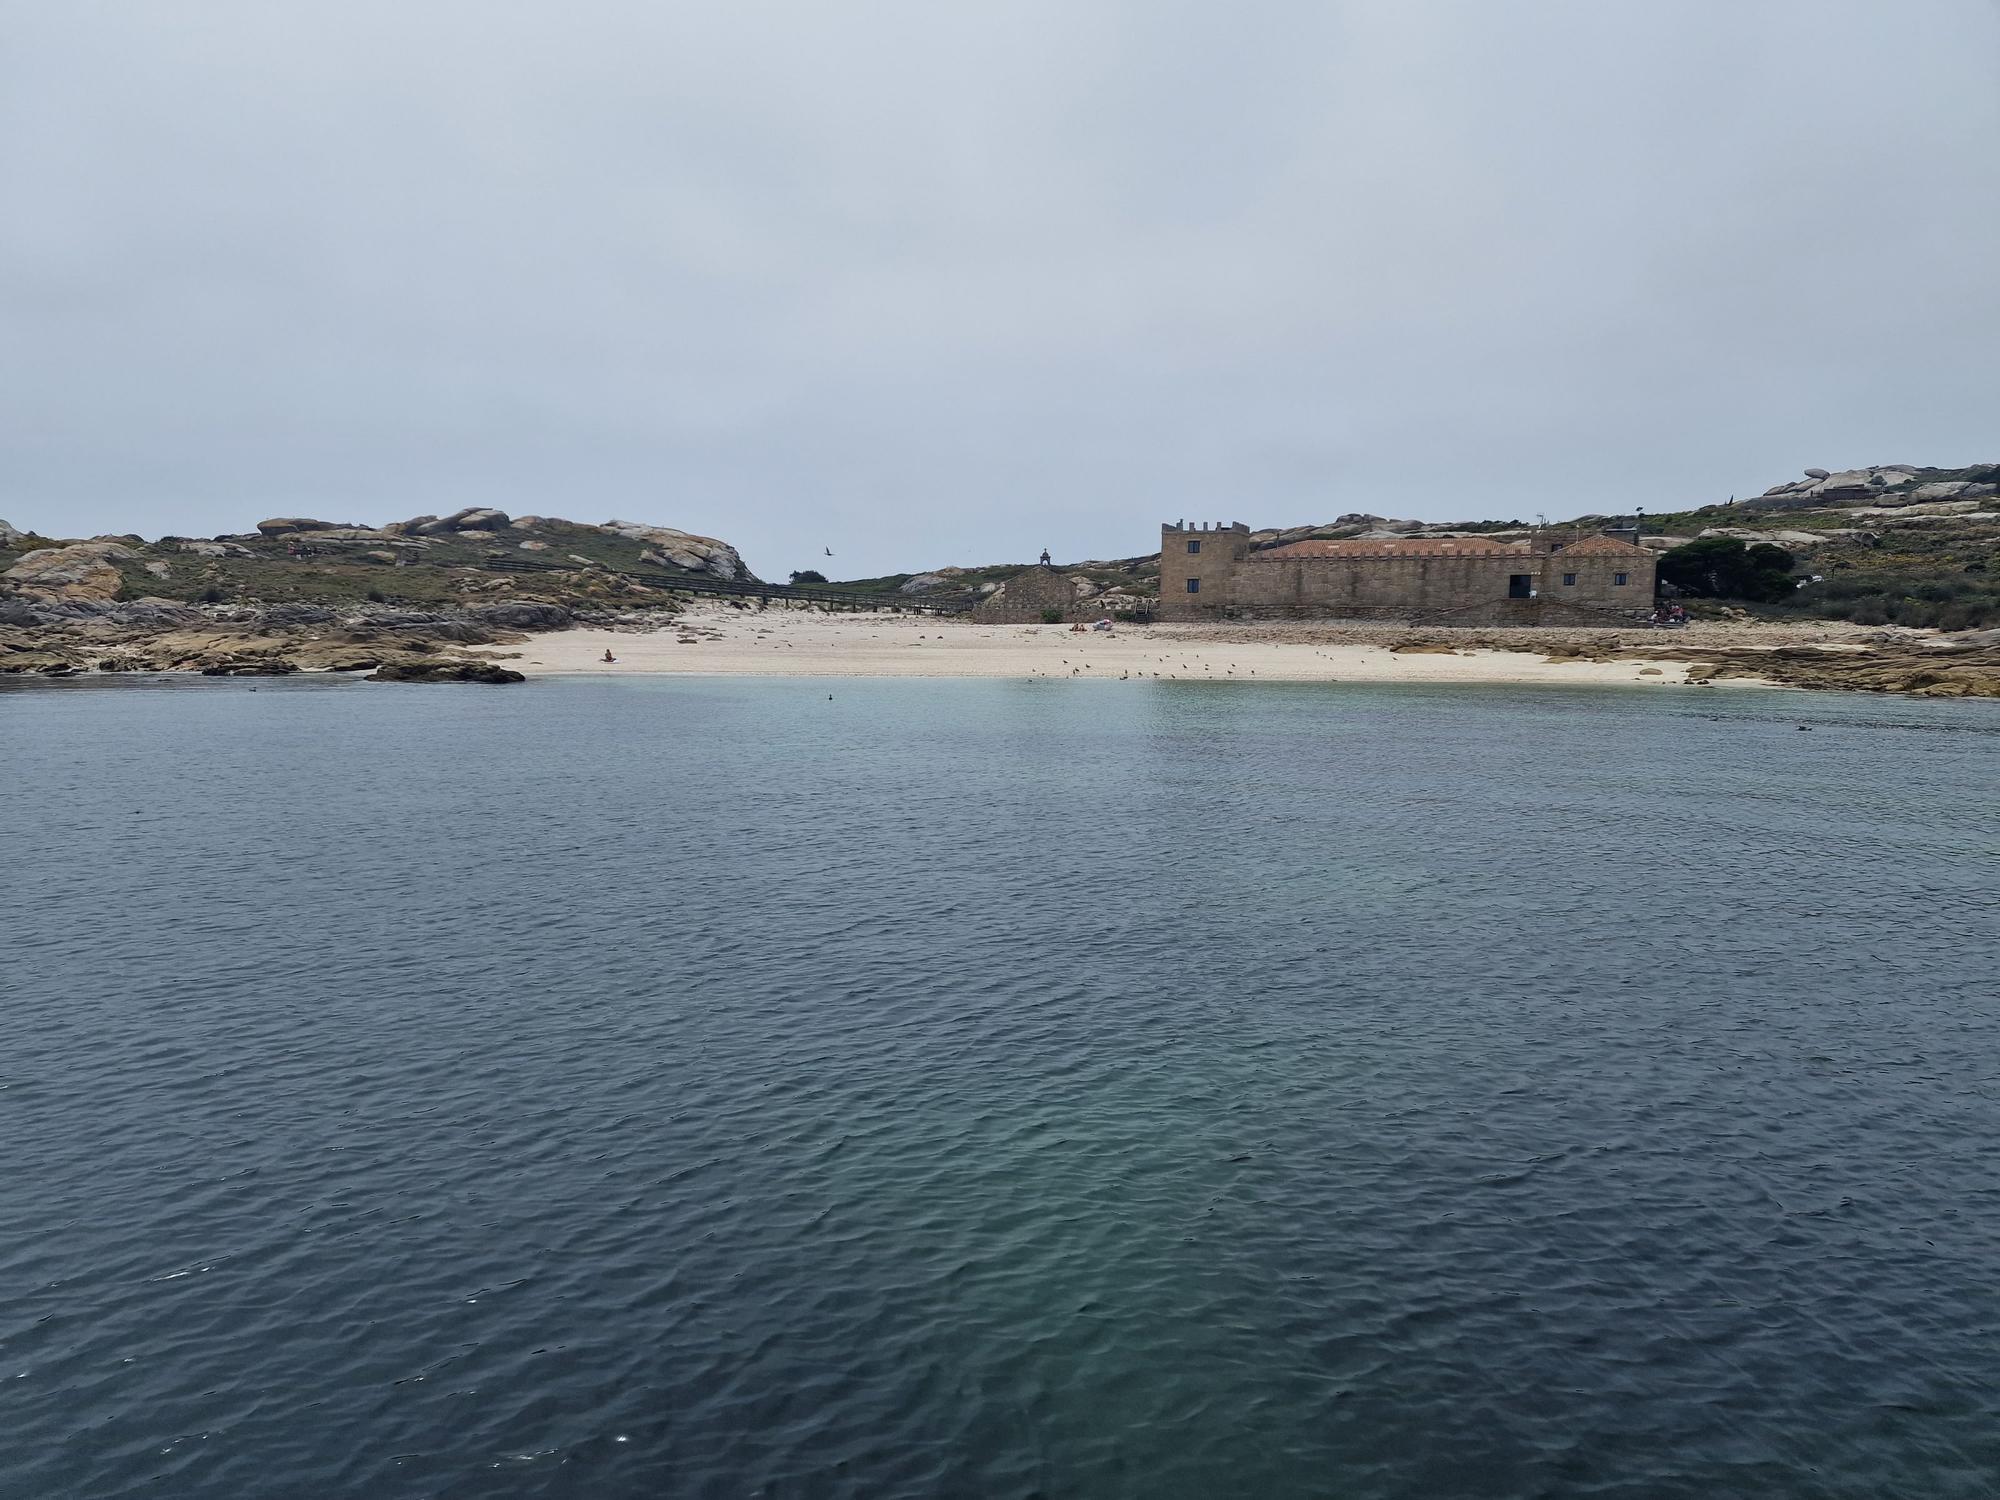 De visita en las Islas Atlánticas de Galicia a bordo del aula flotante "Chasula".